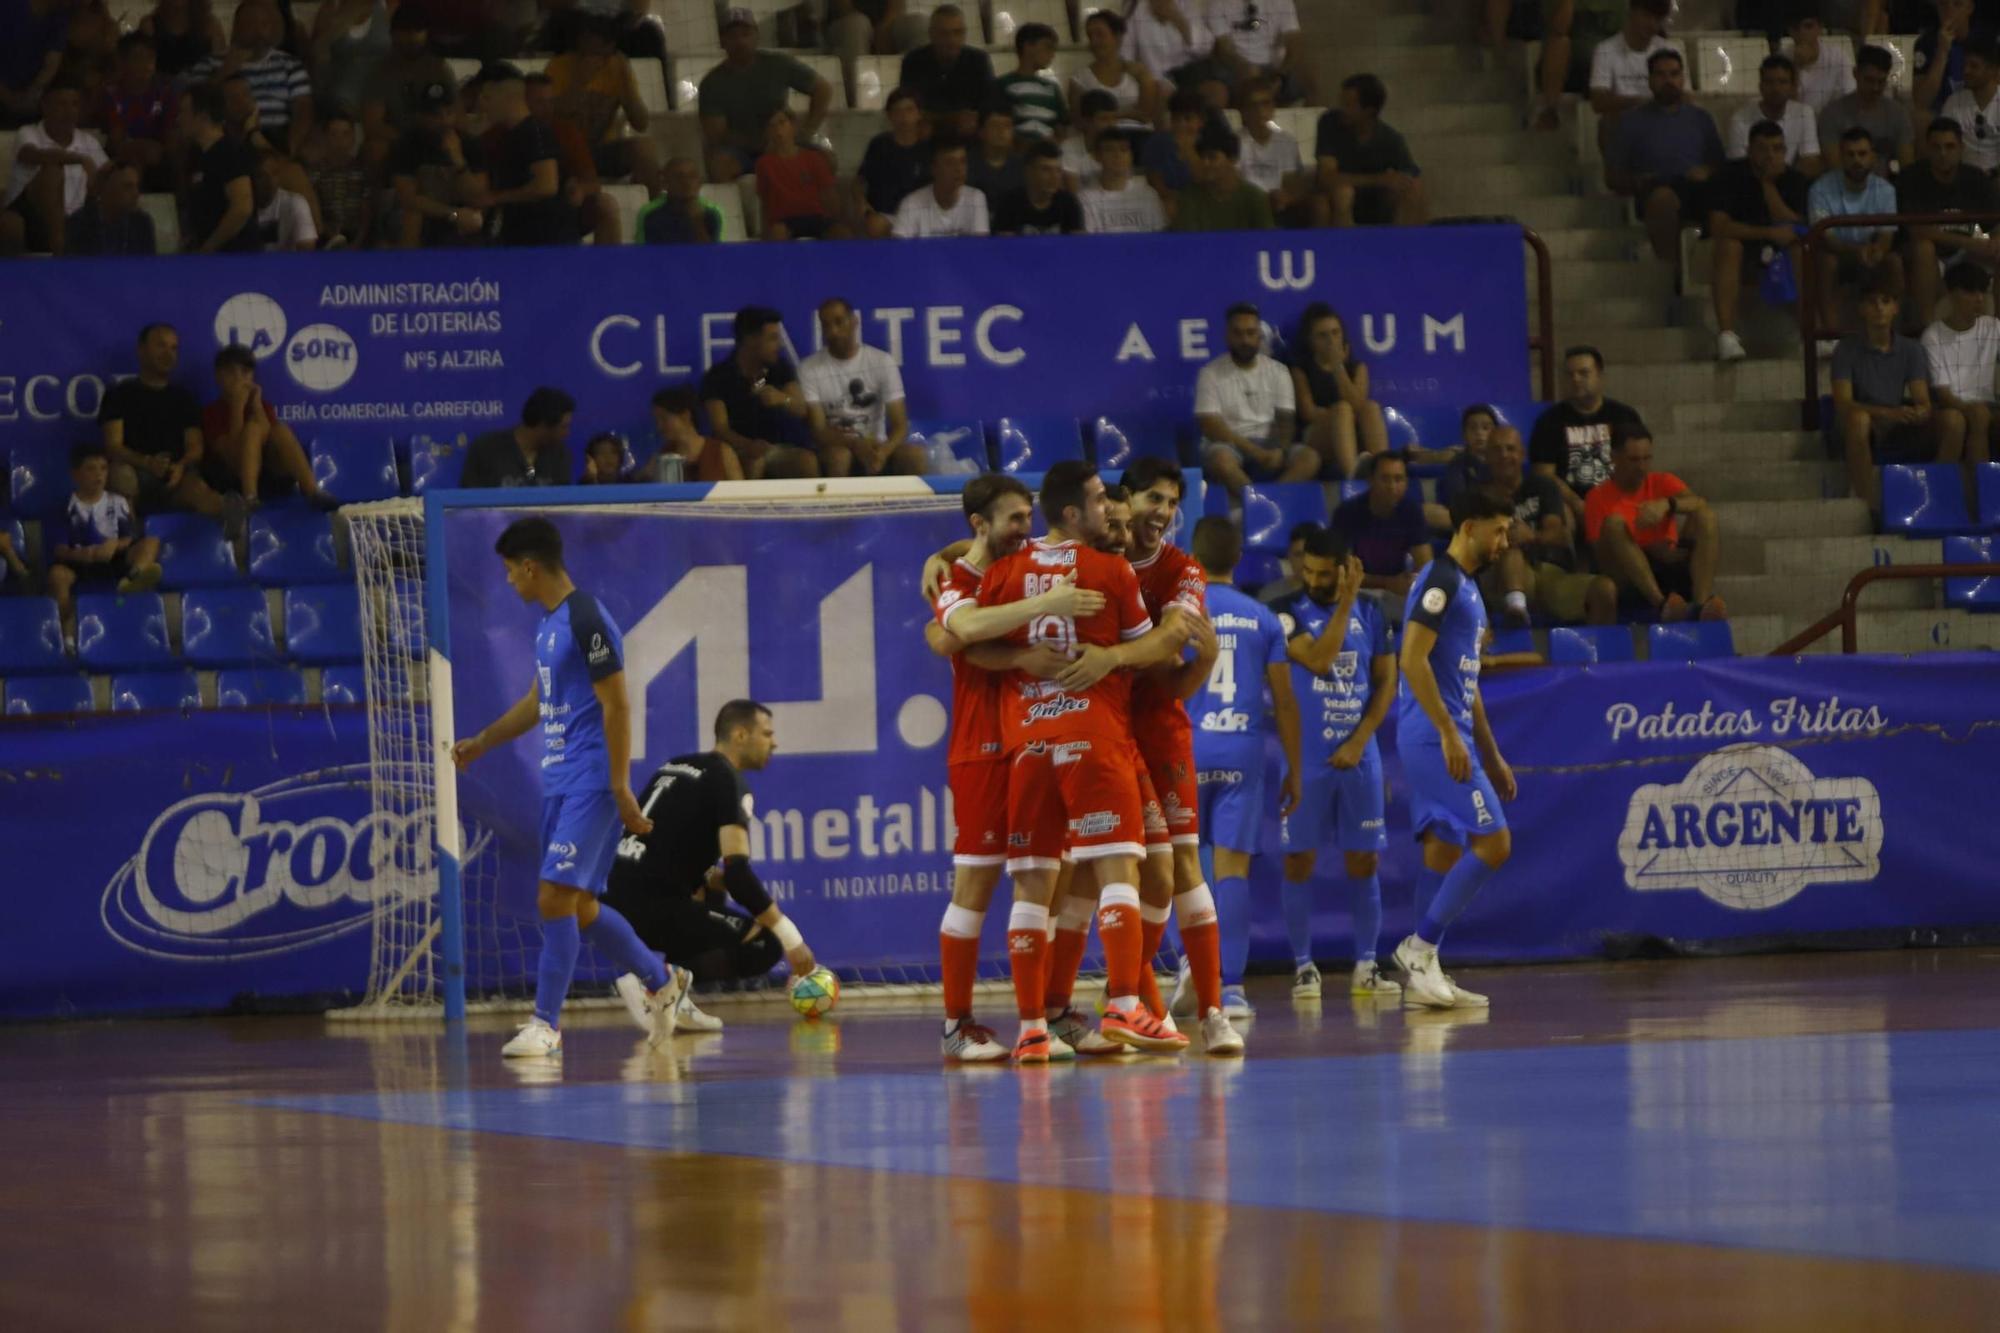 Primer partido del Alzira FS en la máxima categoría en el Palau d'Esports ante el Cartagena